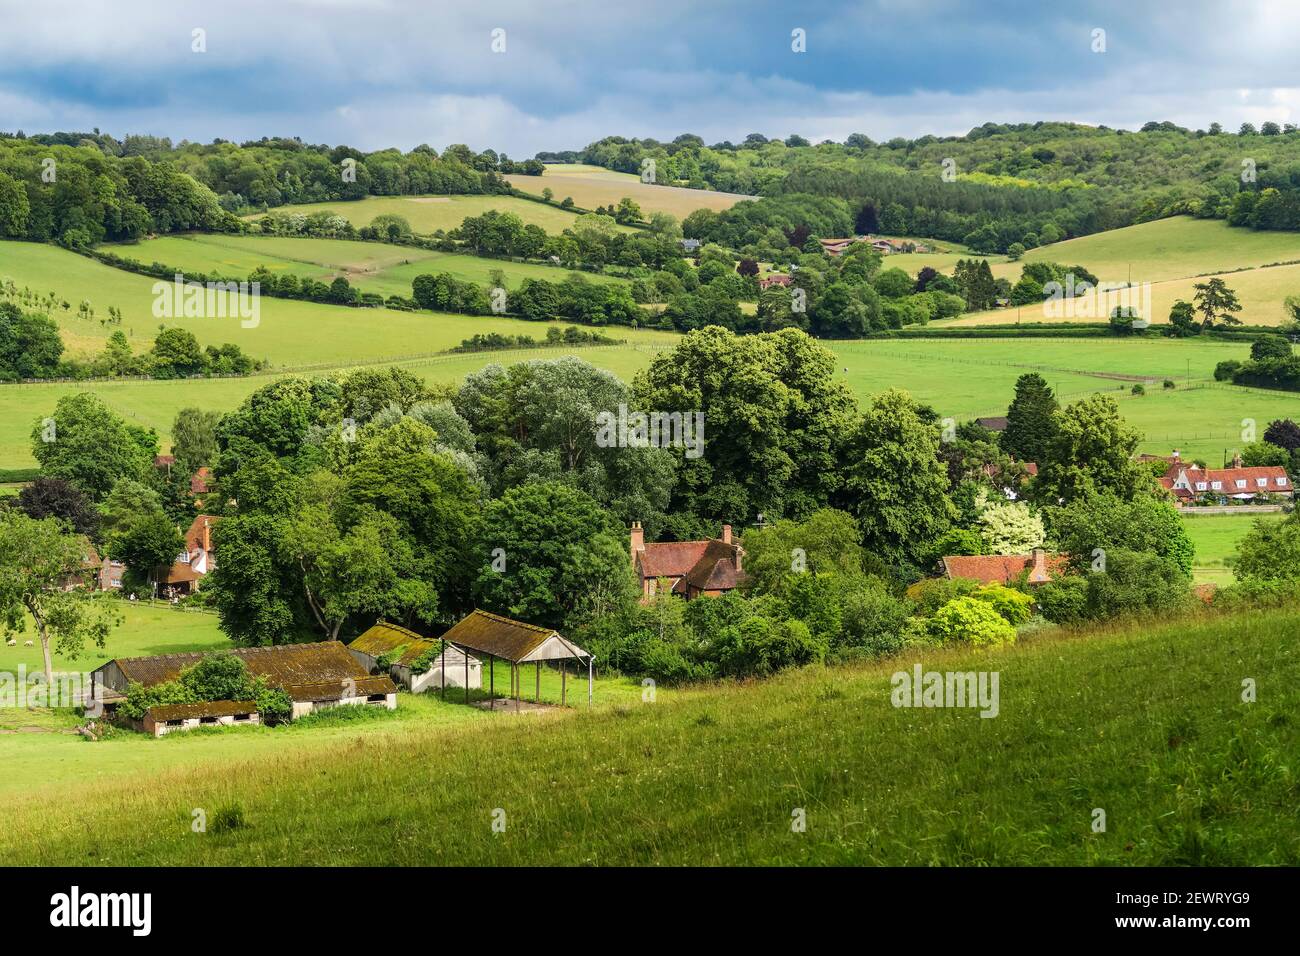 Skirmett village within the lovely Hambleden Valley in the Chiltern Hills near Henley-on-Thames, Skirmett, Buckinghamshire, England, United Kingdom Stock Photo